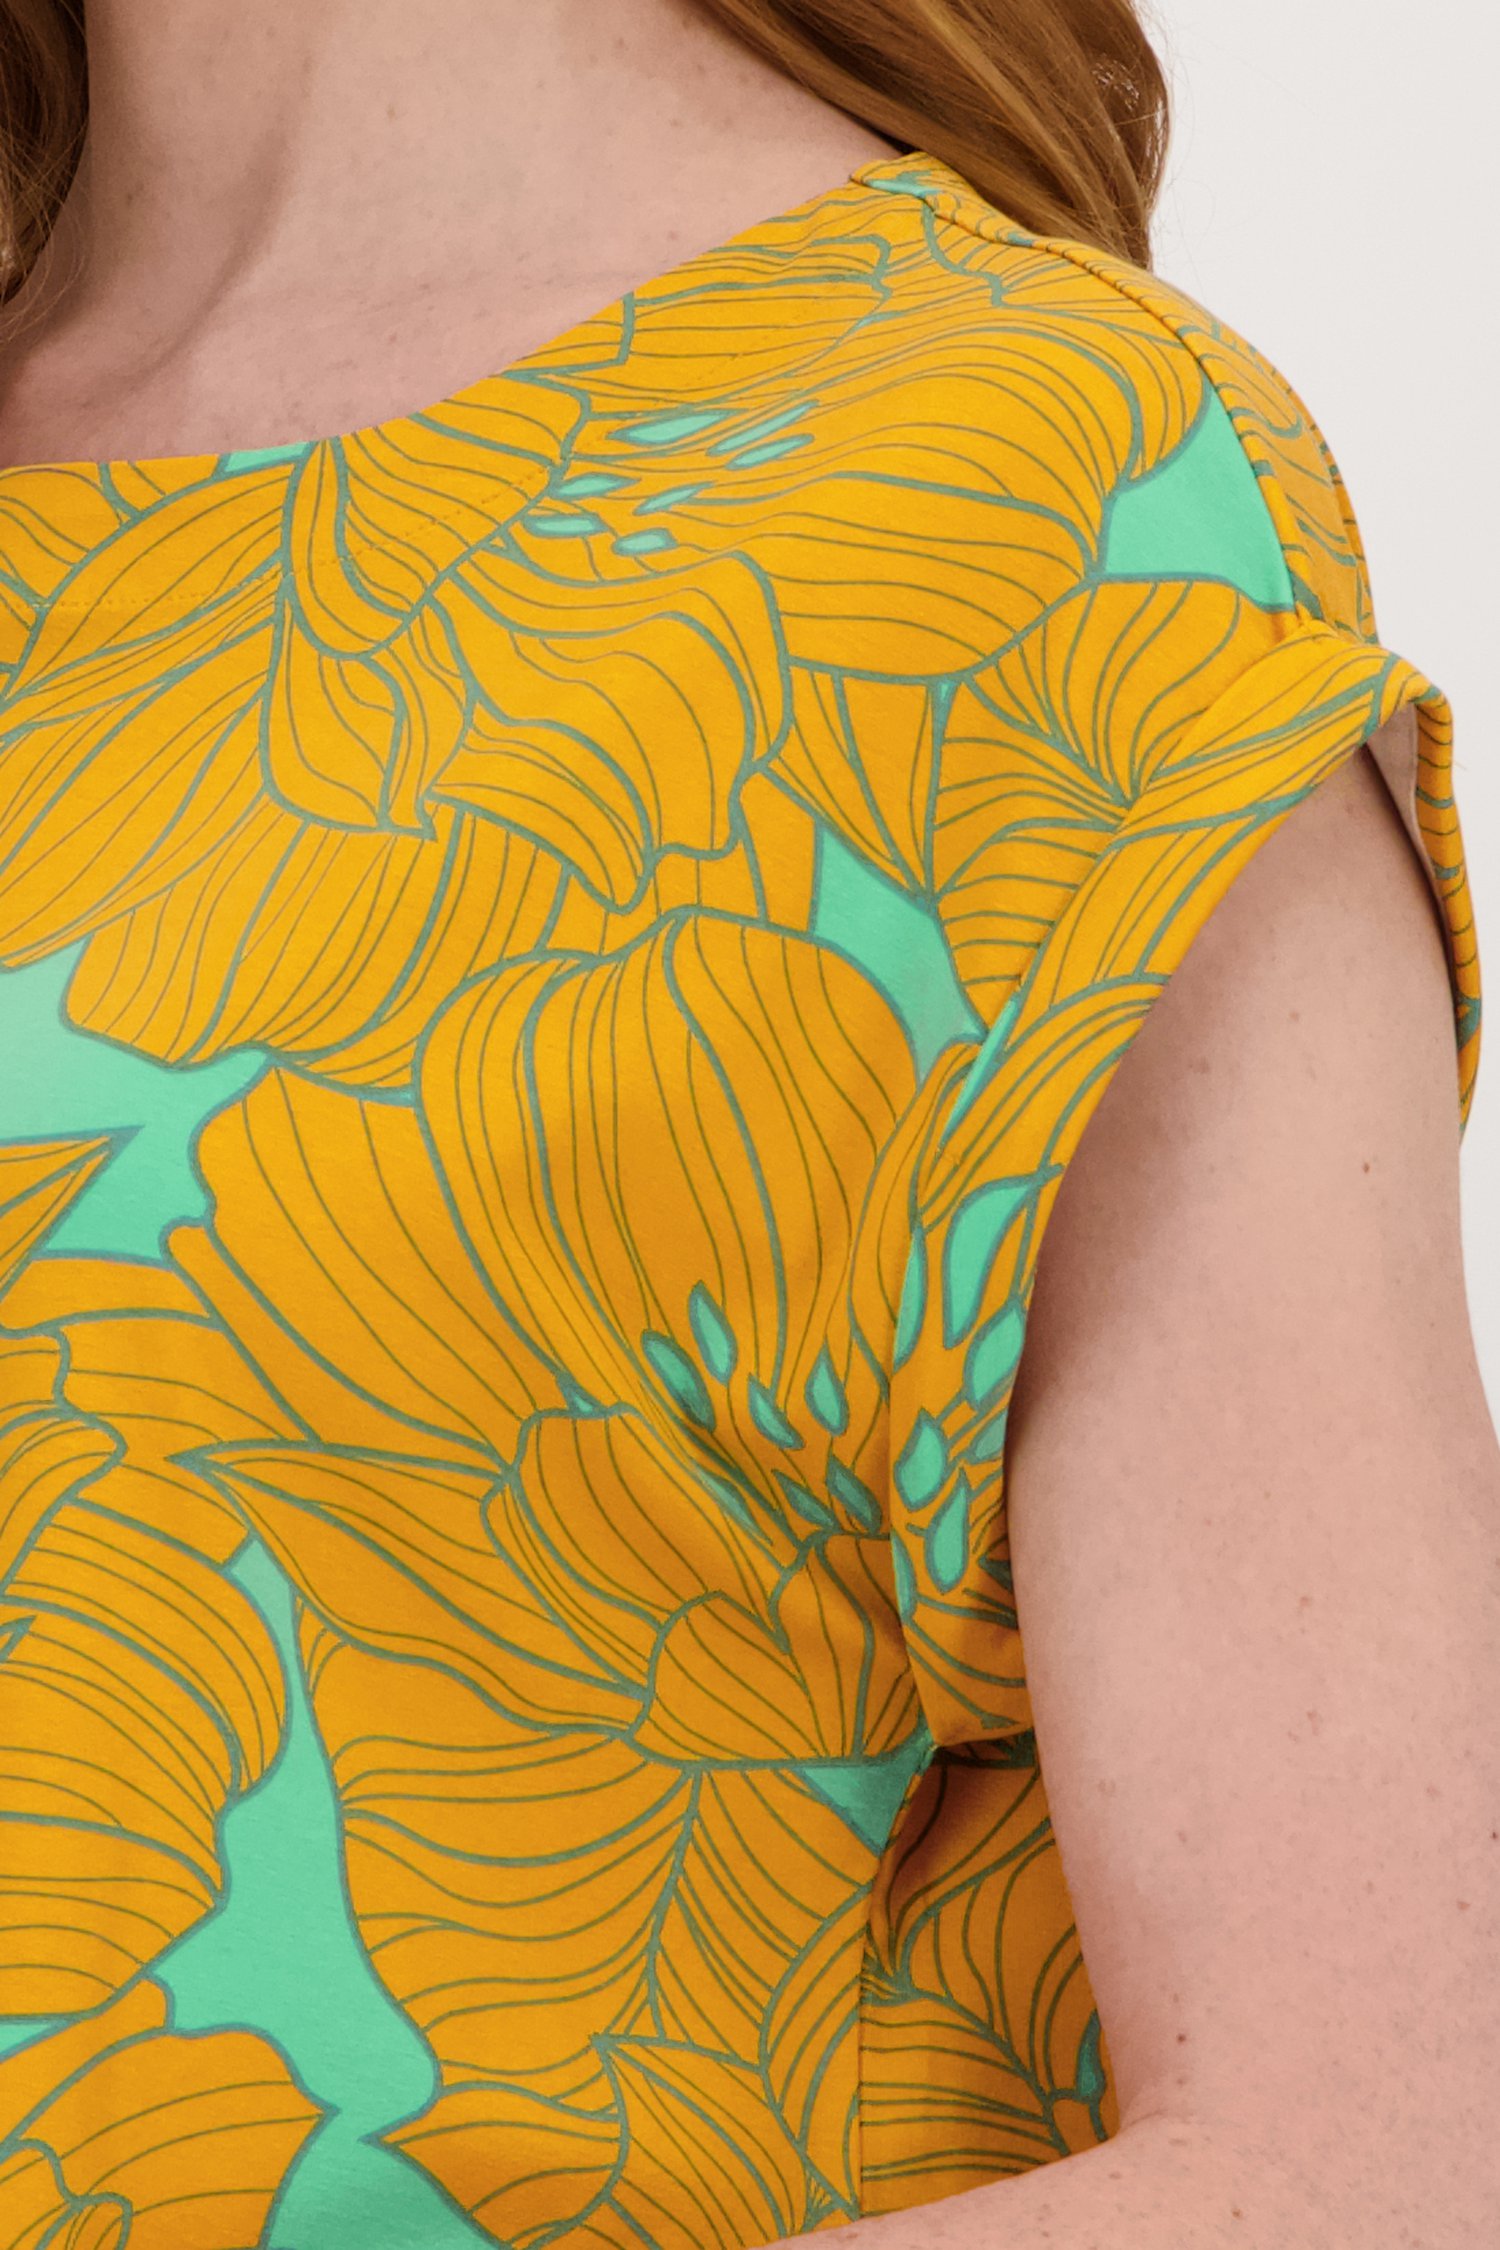 T-shirt vert à imprimé floral orange de Libelle pour Femmes